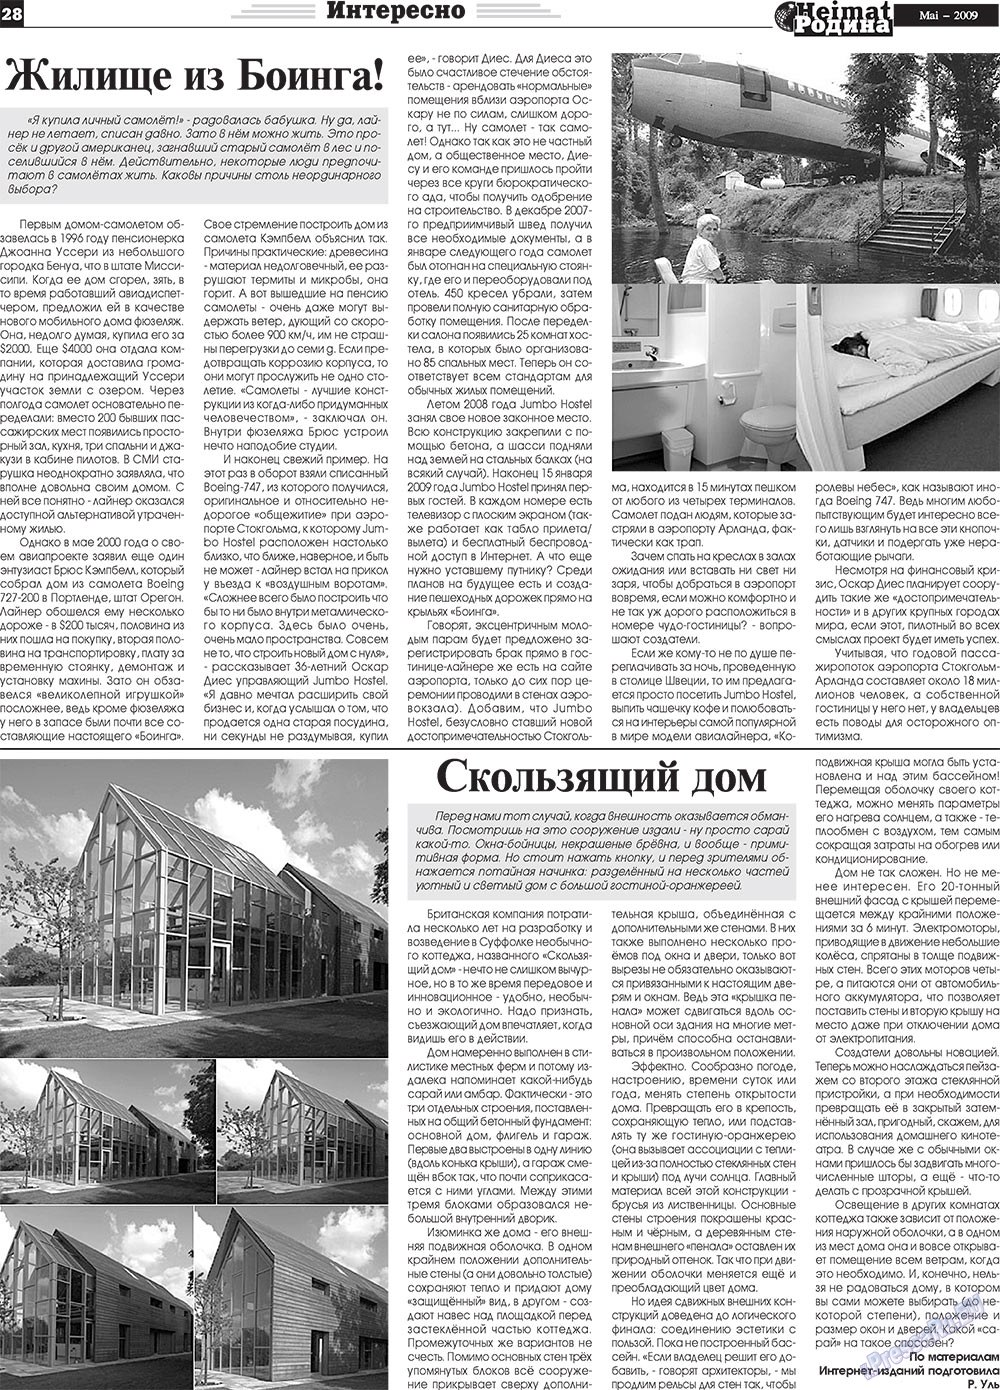 Heimat-Родина (газета). 2009 год, номер 5, стр. 28